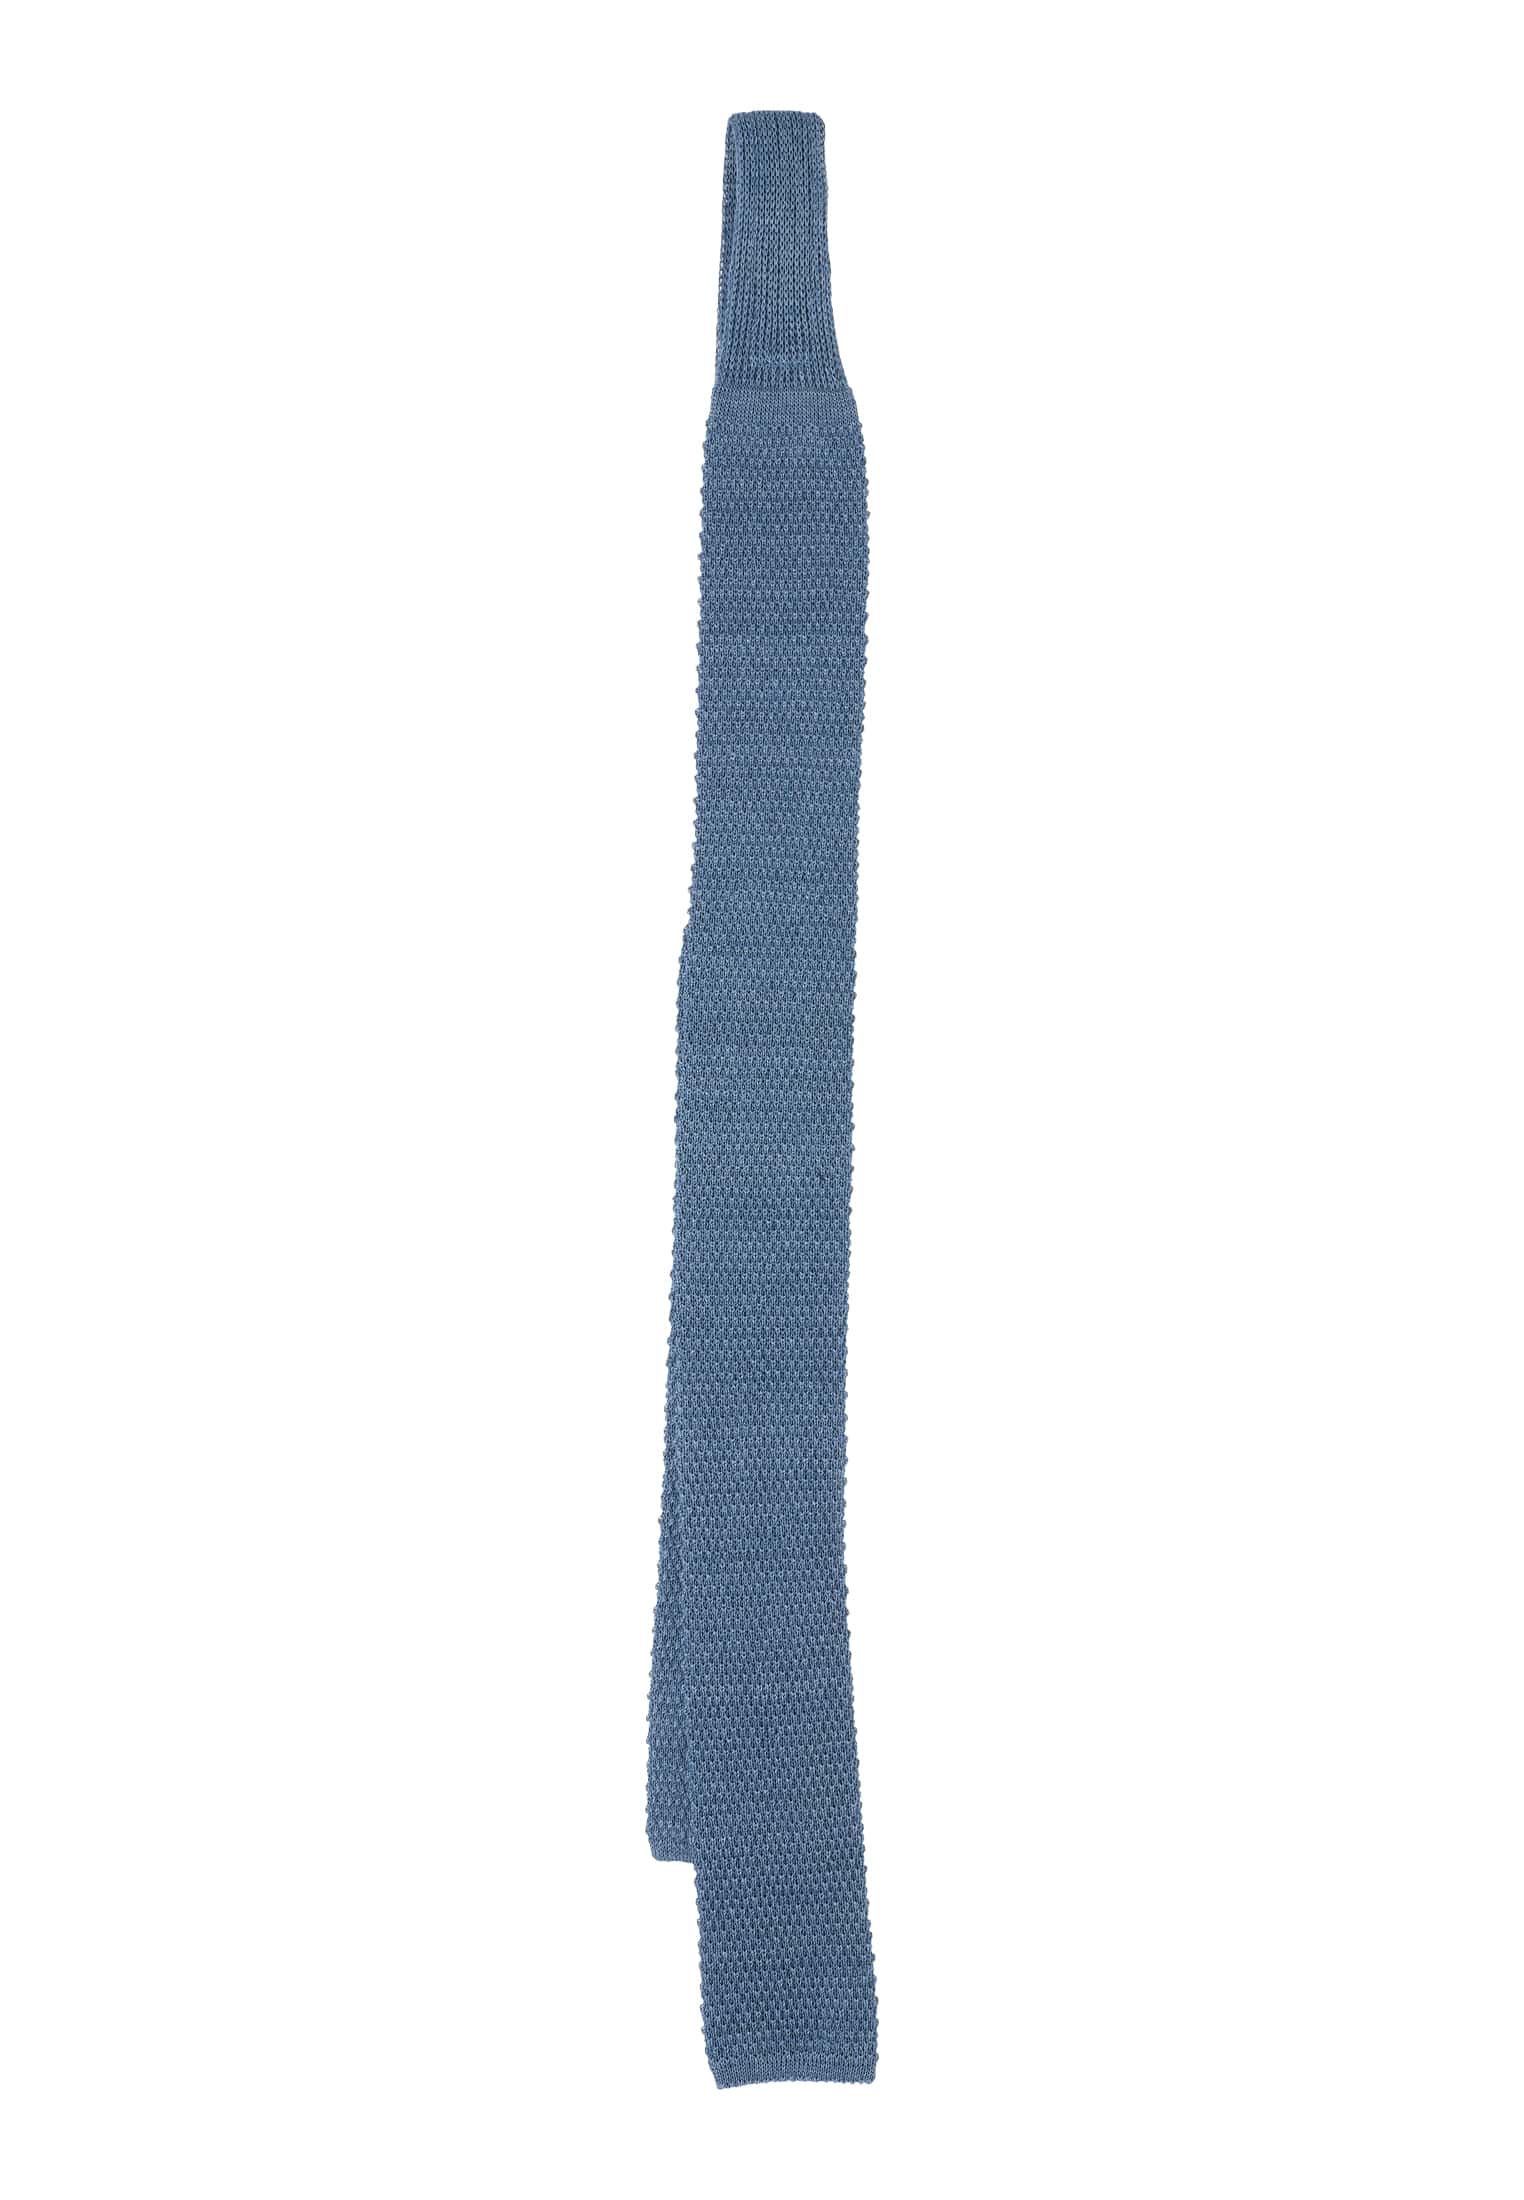 Tie in smoke blue plain